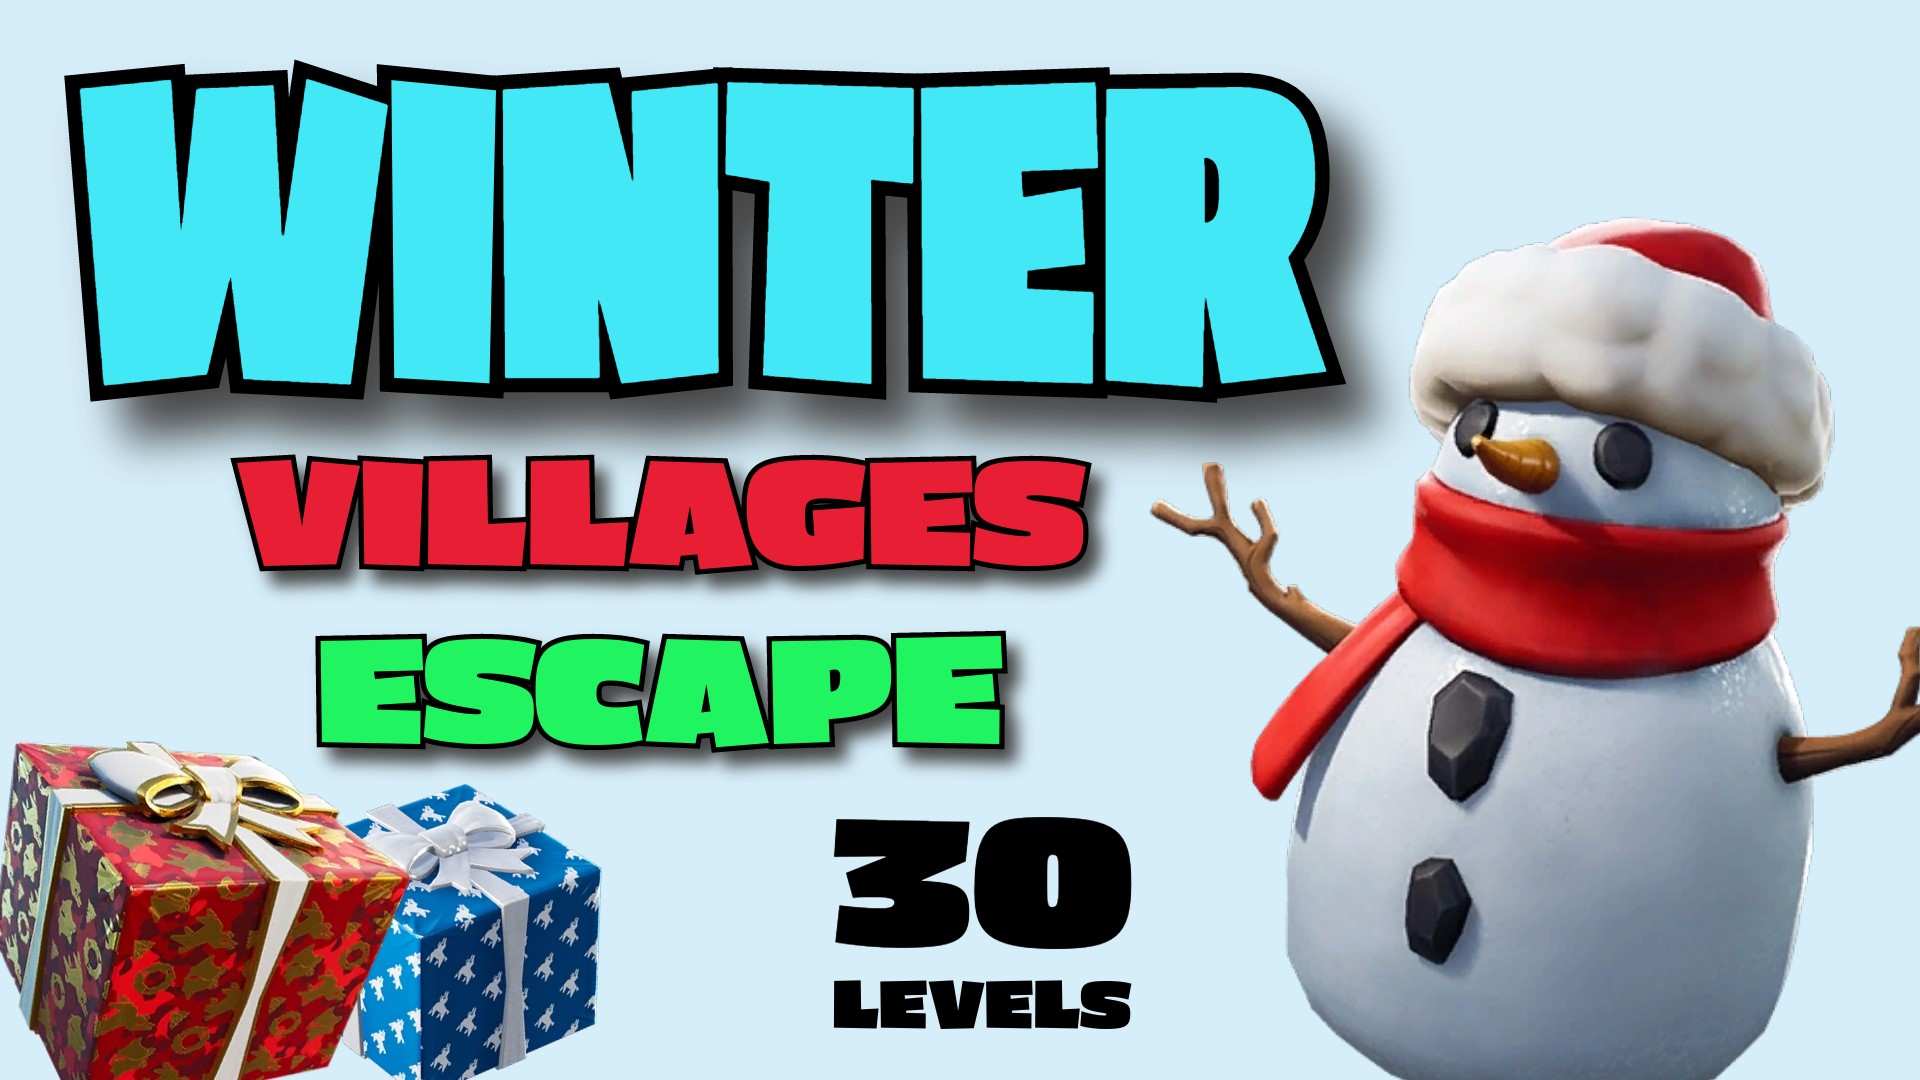 Winter villages escape